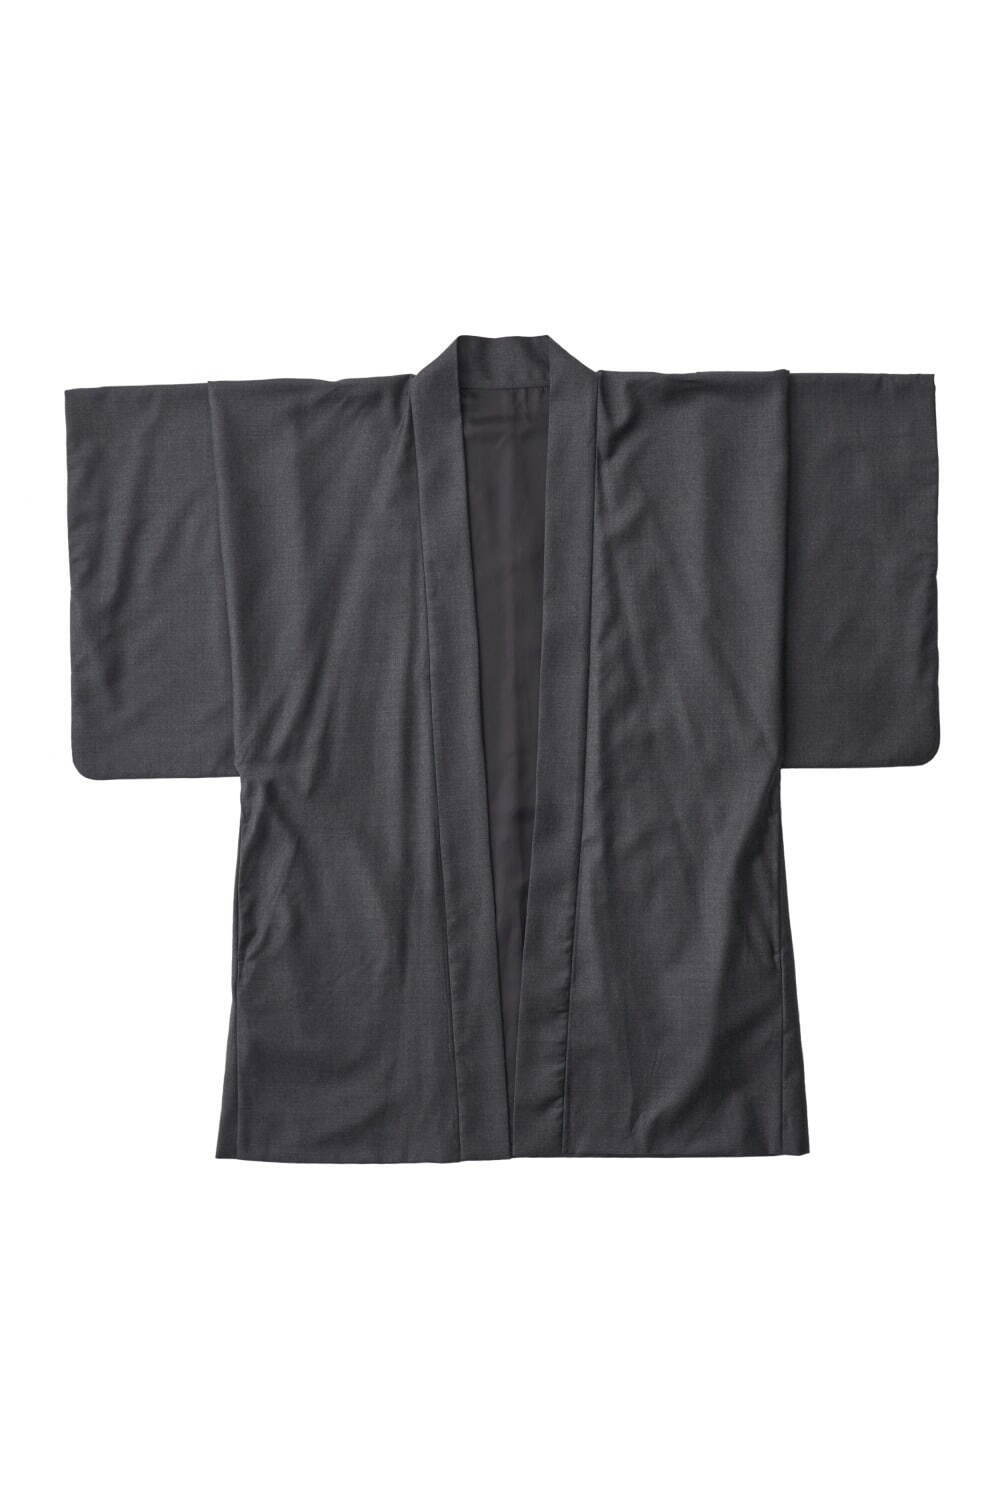 羽織型コート 35,200円